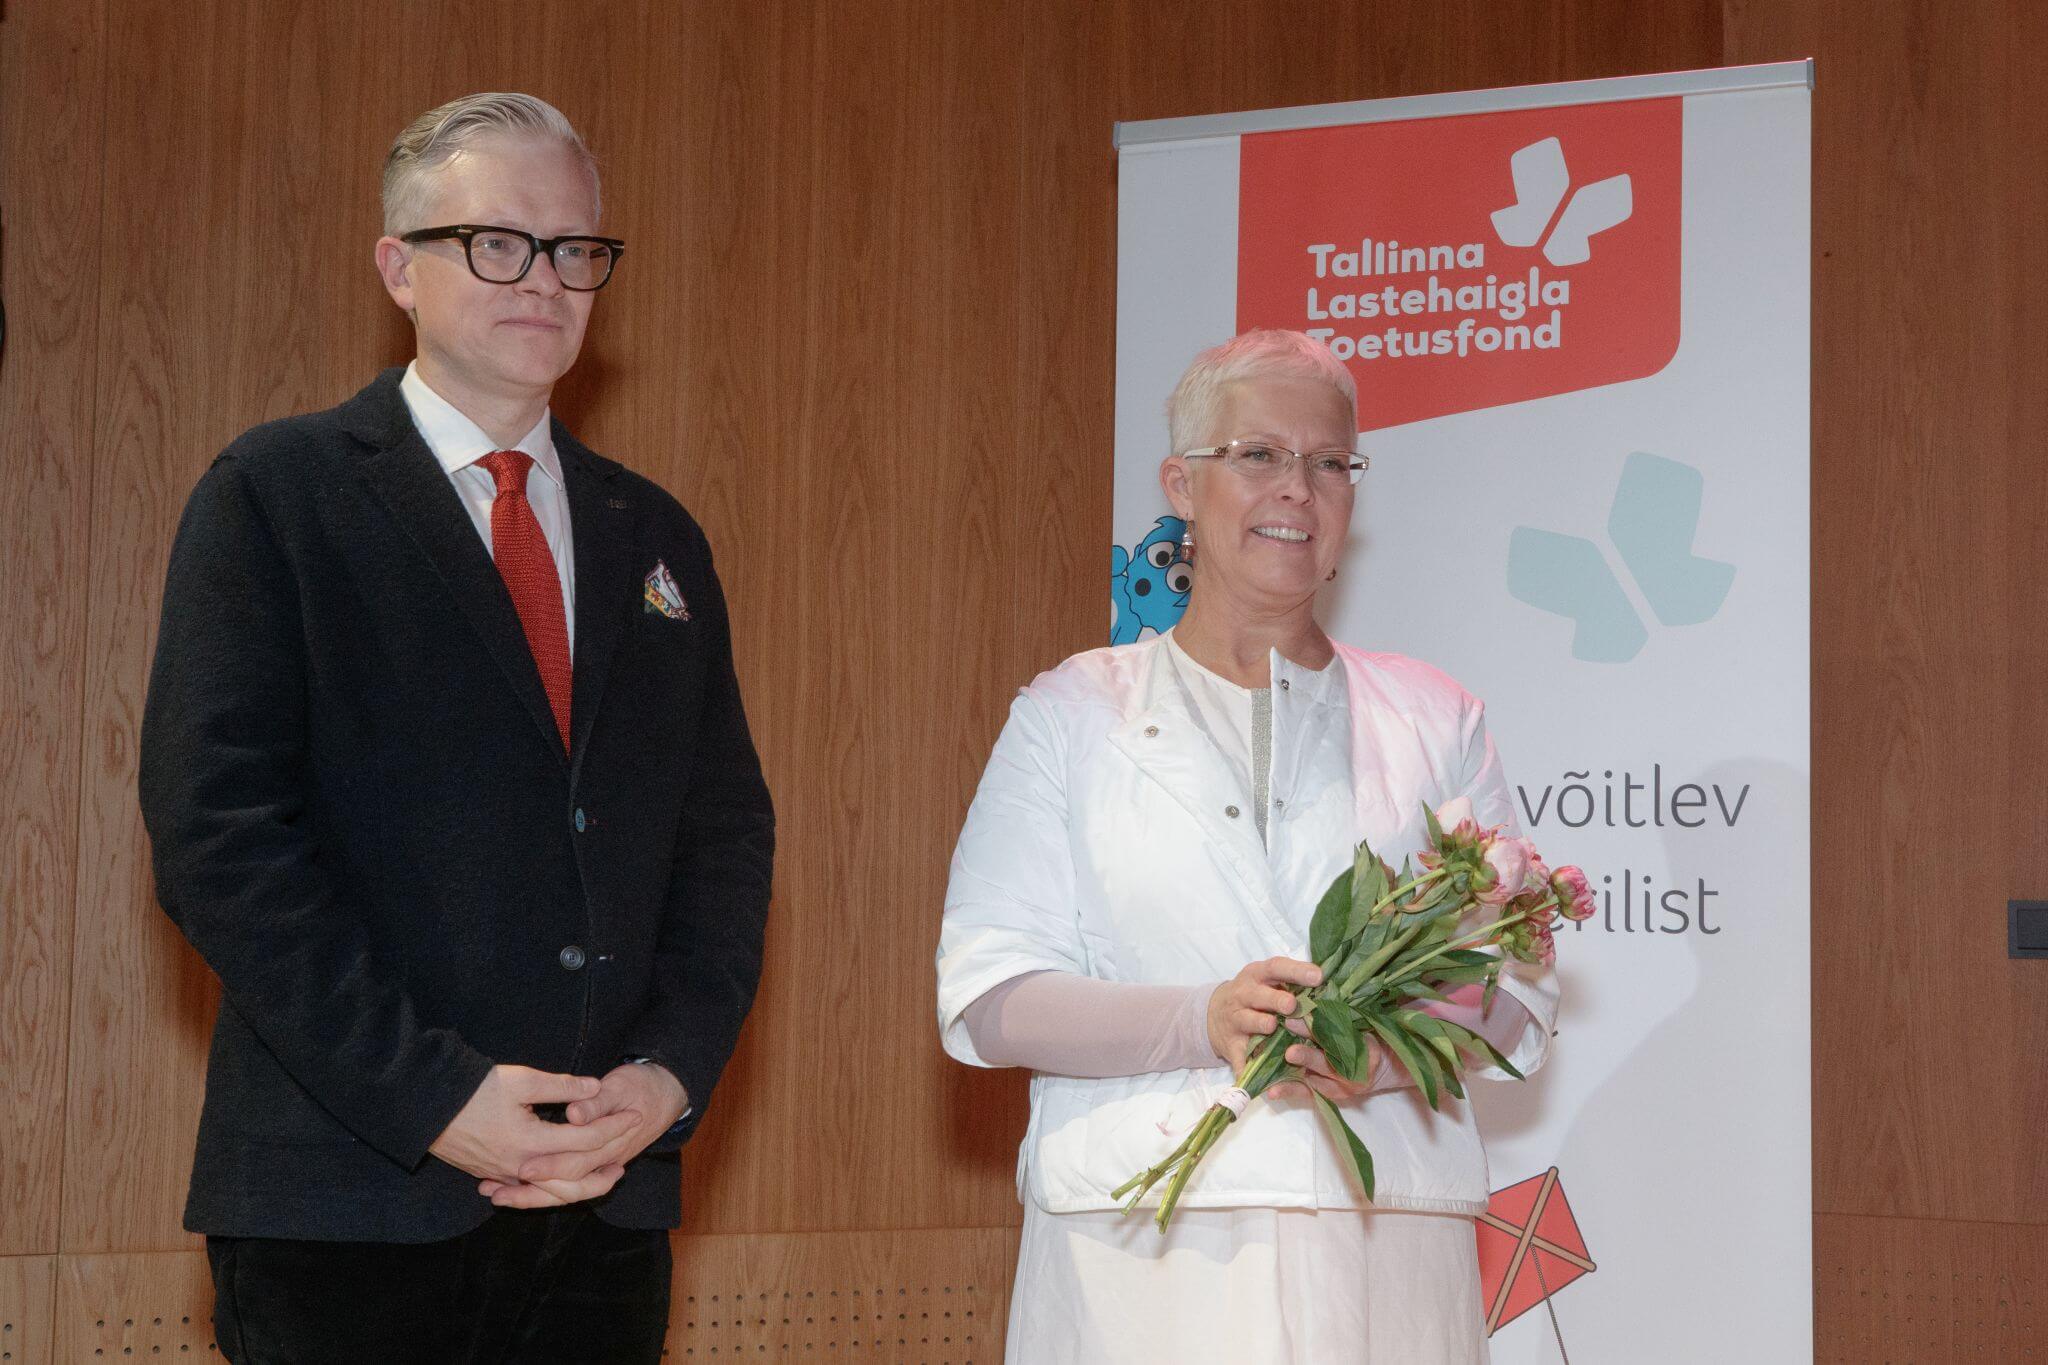 GALERII I Tallinna Lastehaigla Toetusfondi tänuõhtul tunnustati fondi suurimaid toetajaid